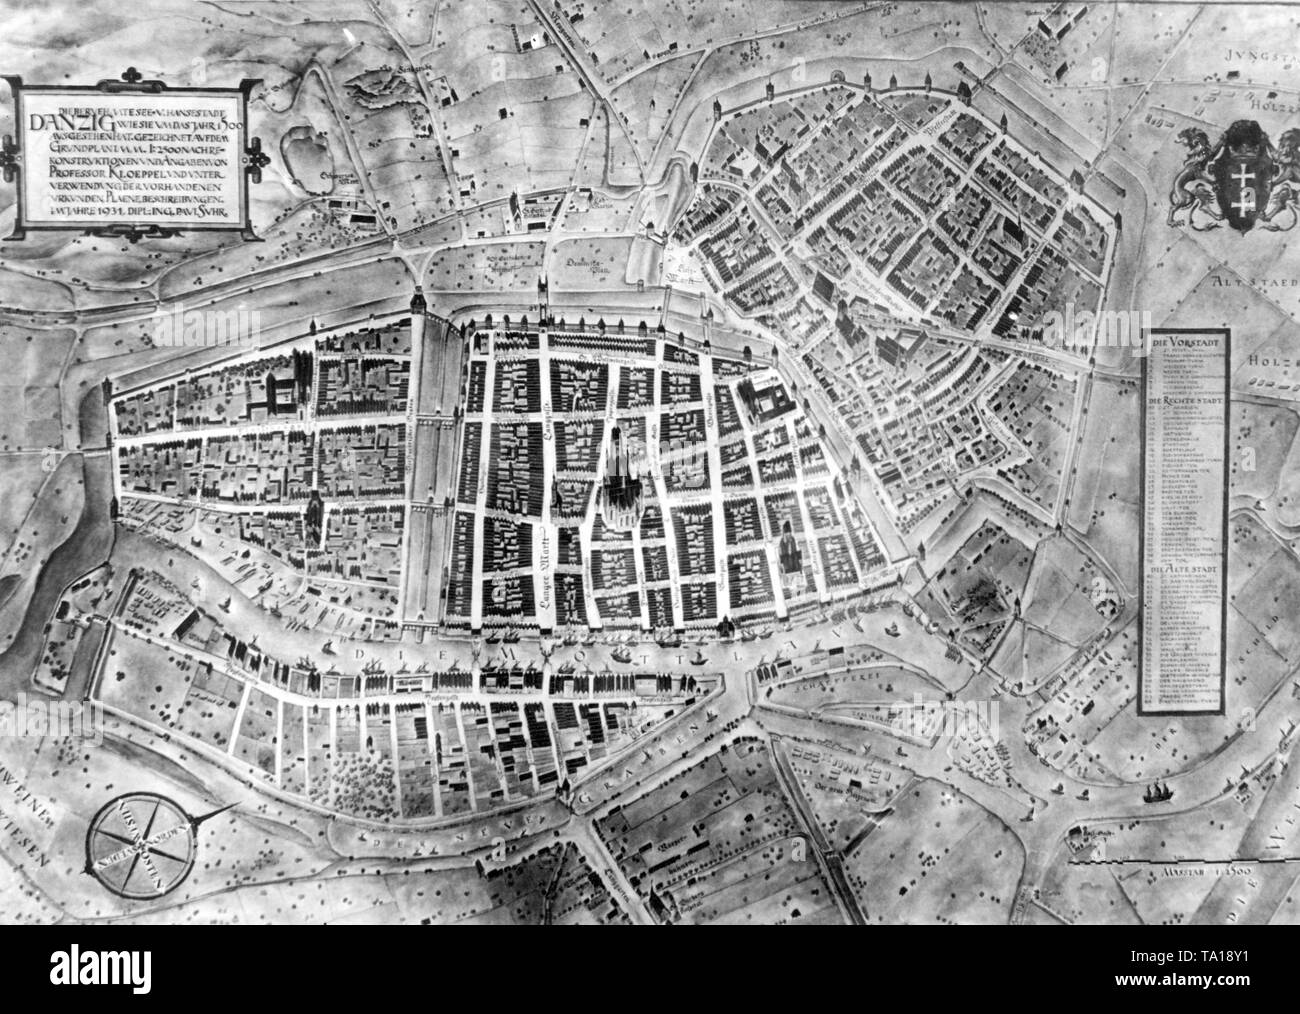 Dieses Foto zeigt eine rekonstruierte Stadt Karte von Danzig von Professor O. Kloeppel. Der Plan war Teil von zwei Ausstellungen über die Nordische Architektur an der Technischen Hochschule in Danzig. Stockfoto